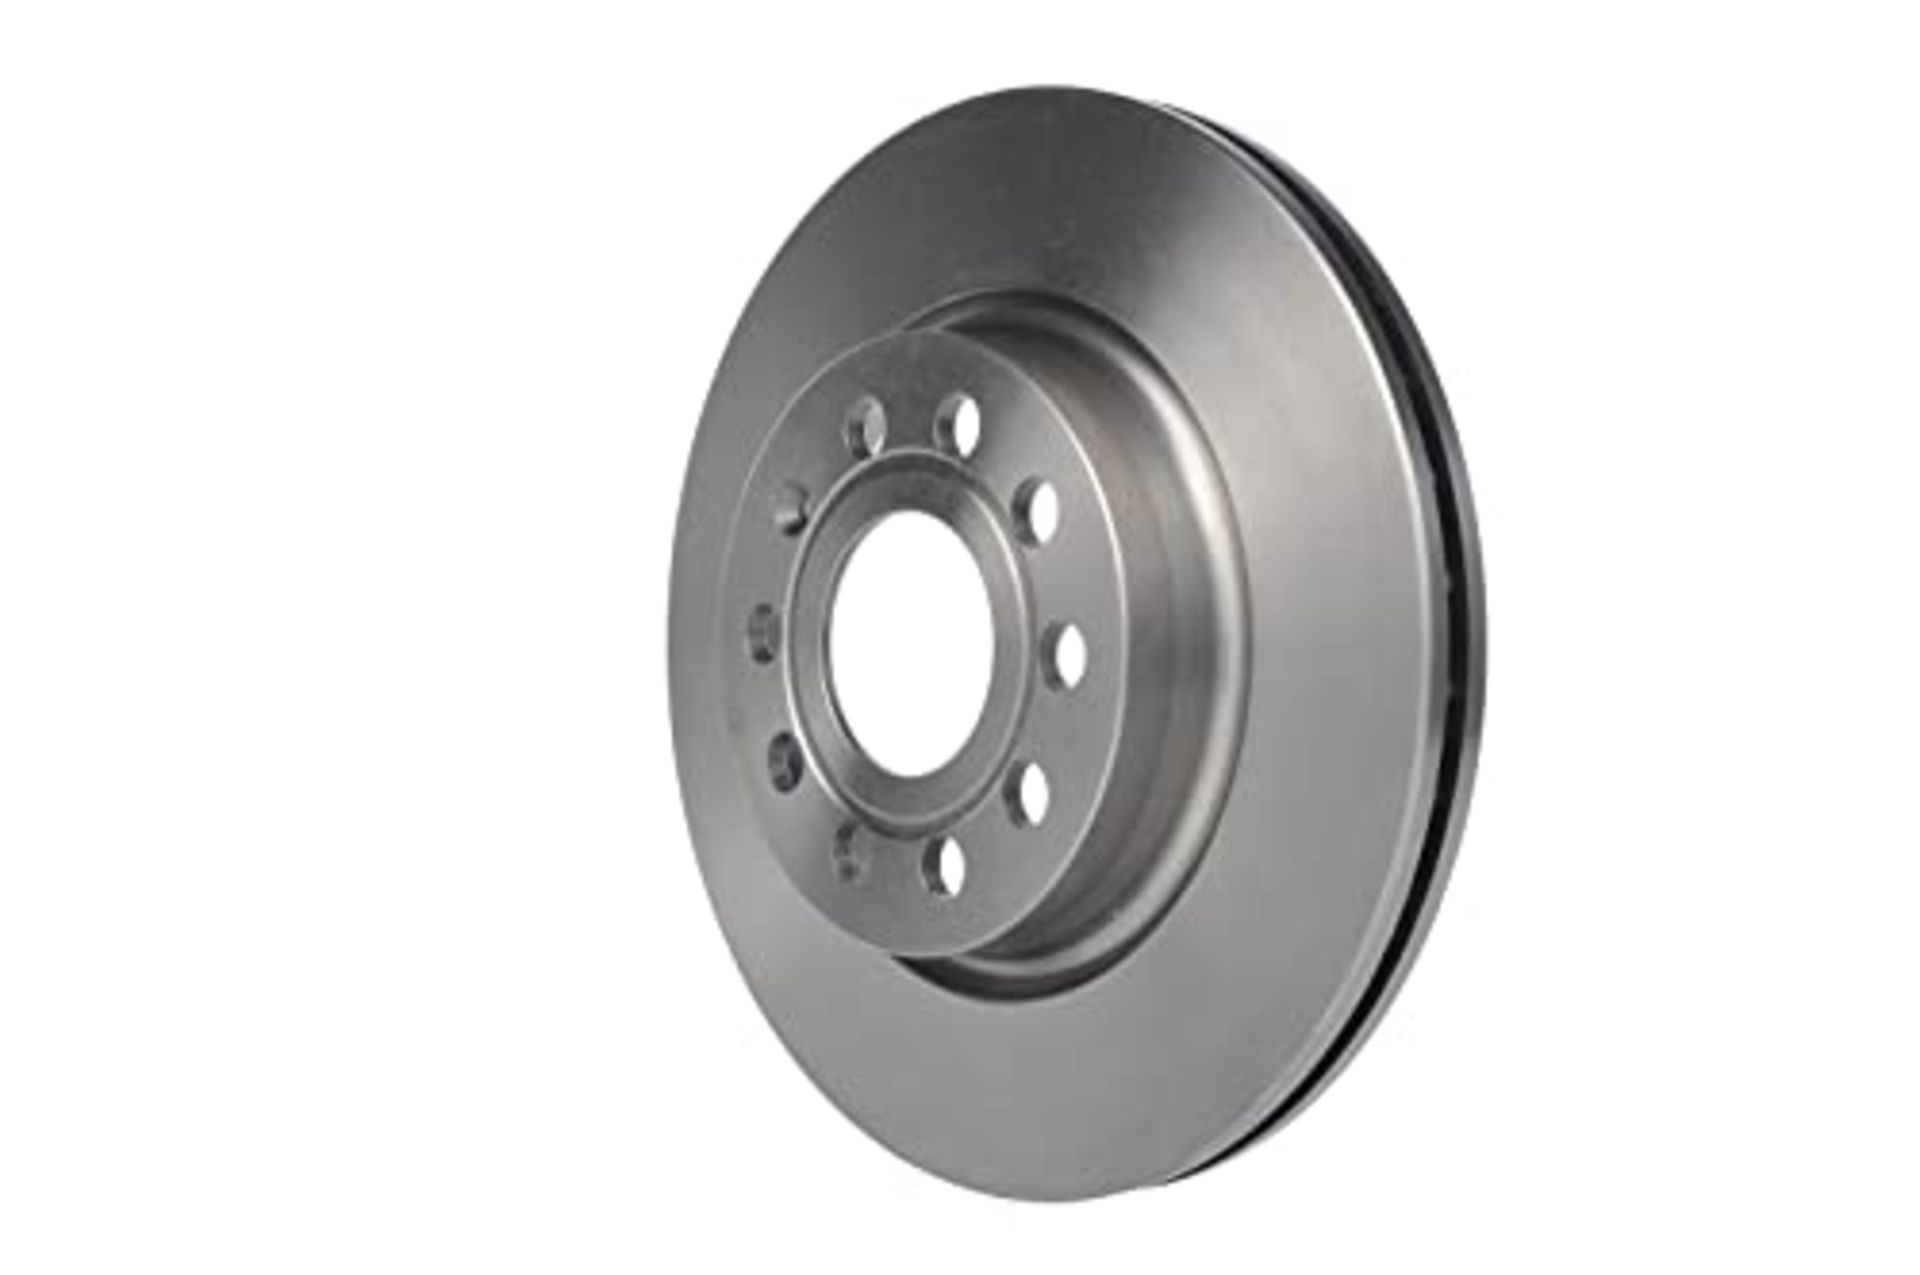 Bosch BD1028 Brake Discs - Front Axle - ECE-R90 Certified - 1 Set of 2 Discs